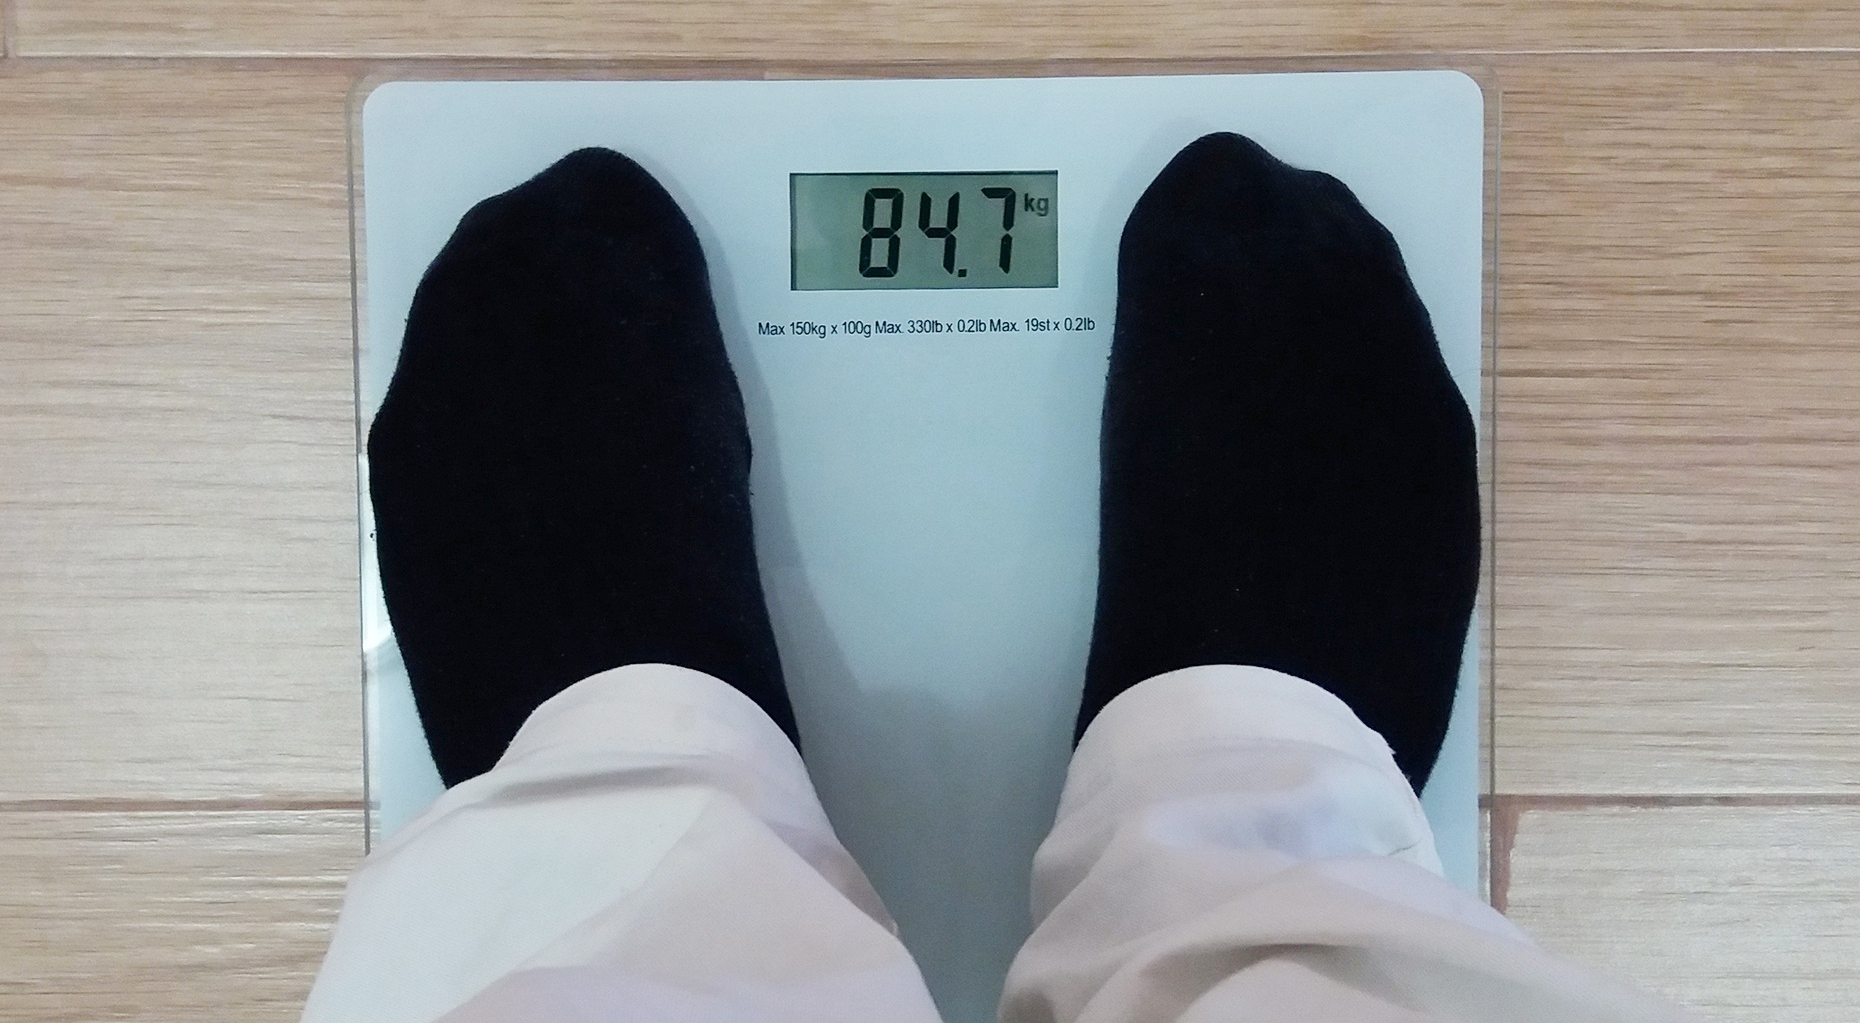 Is er een optimaal gewicht? Overgewicht wordt meestal bepaald aan de hand van de body mass index (BMI).